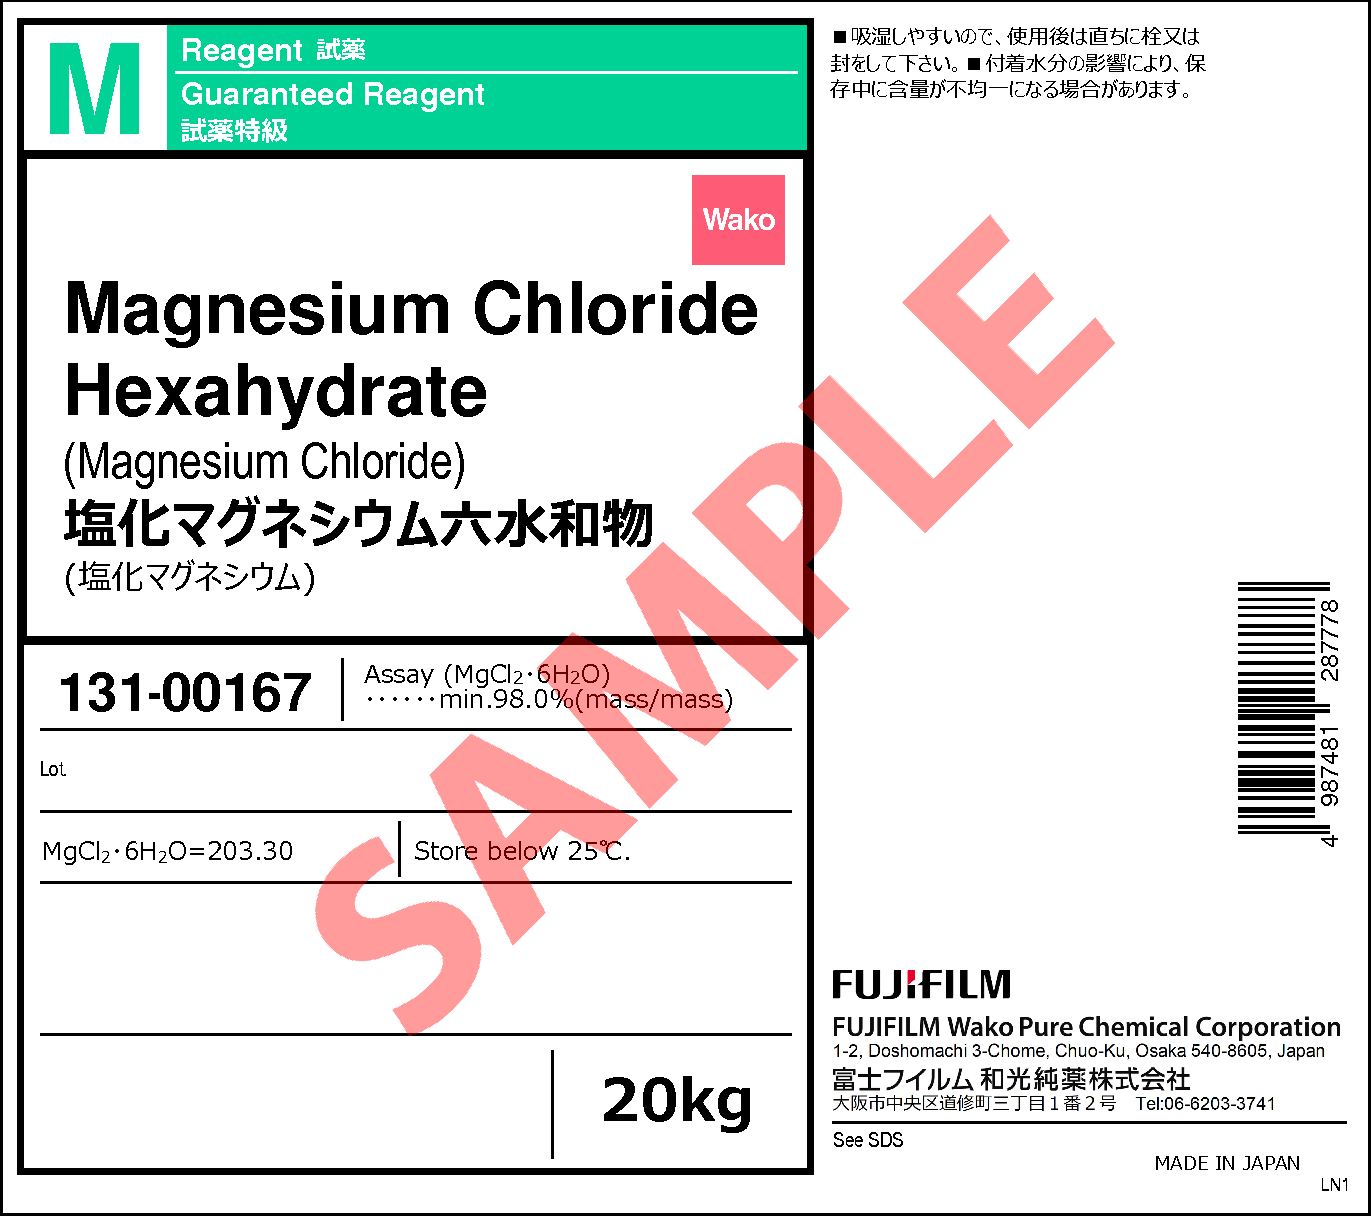 7791 18 6 塩化マグネシウム六水和物 Magnesium Chloride Hexahydrate 131 131 133 135 詳細情報 常用試薬 ラボウェア 試薬 富士フイルム和光純薬